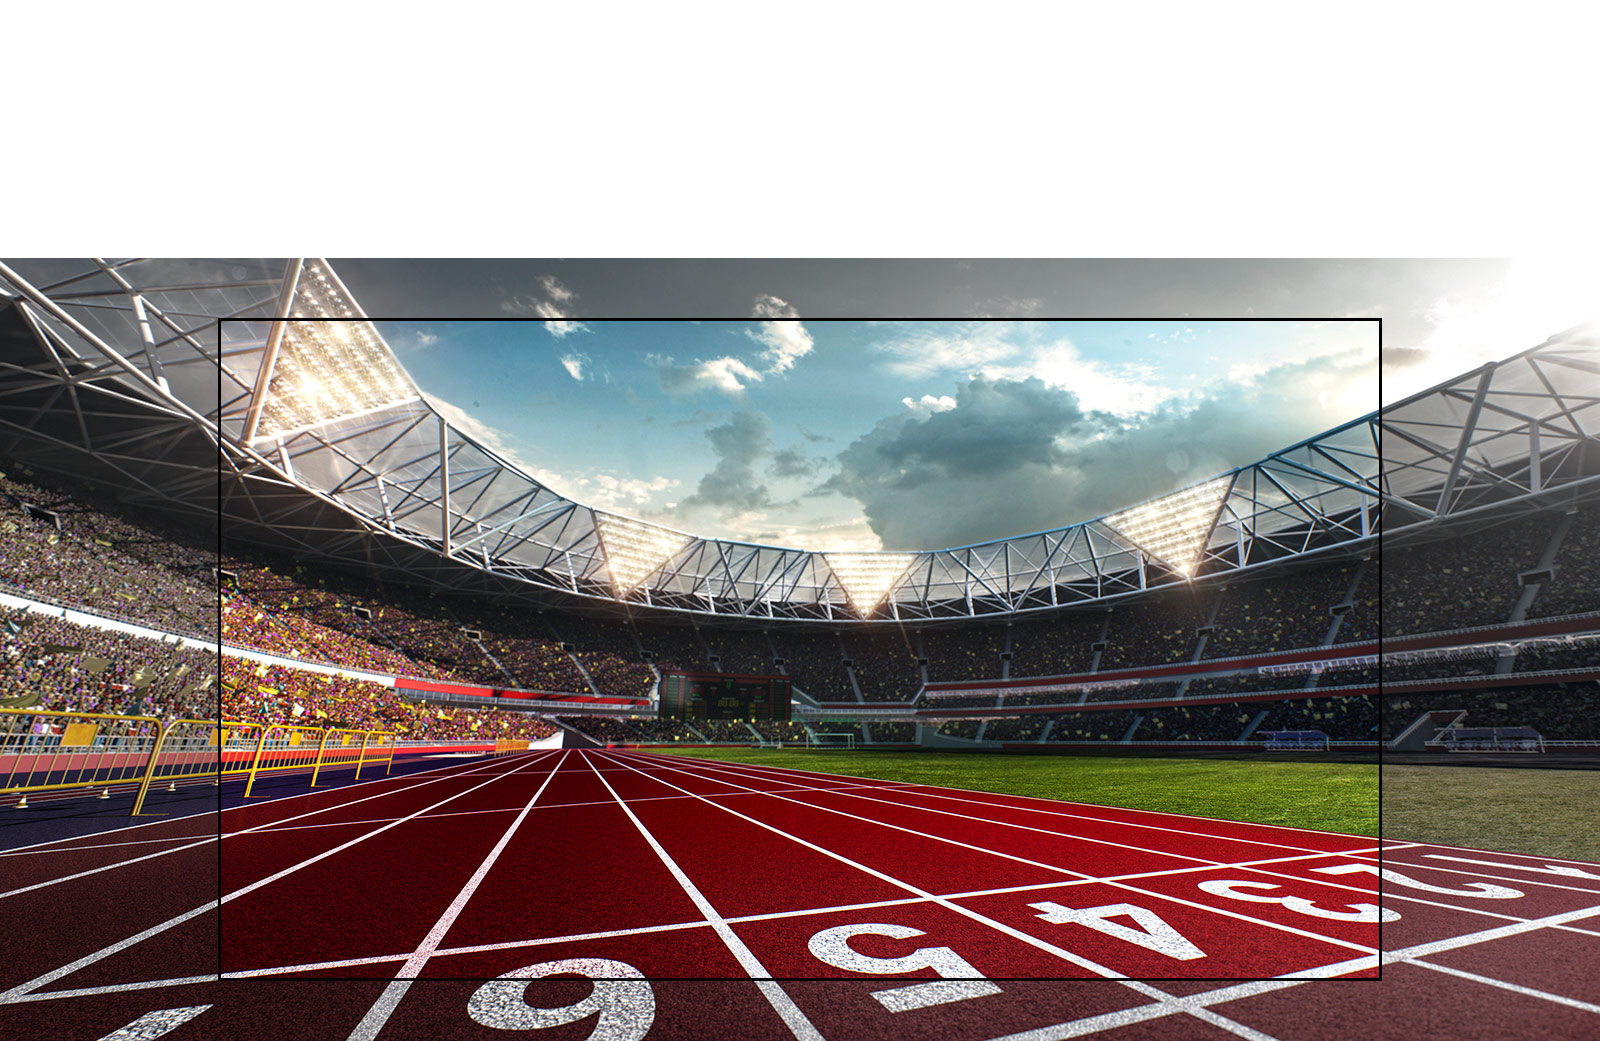 Écran de téléviseur montrant un stade avec une image en plan rapproché d'une piste de course. Le stade est rempli de spectateurs.